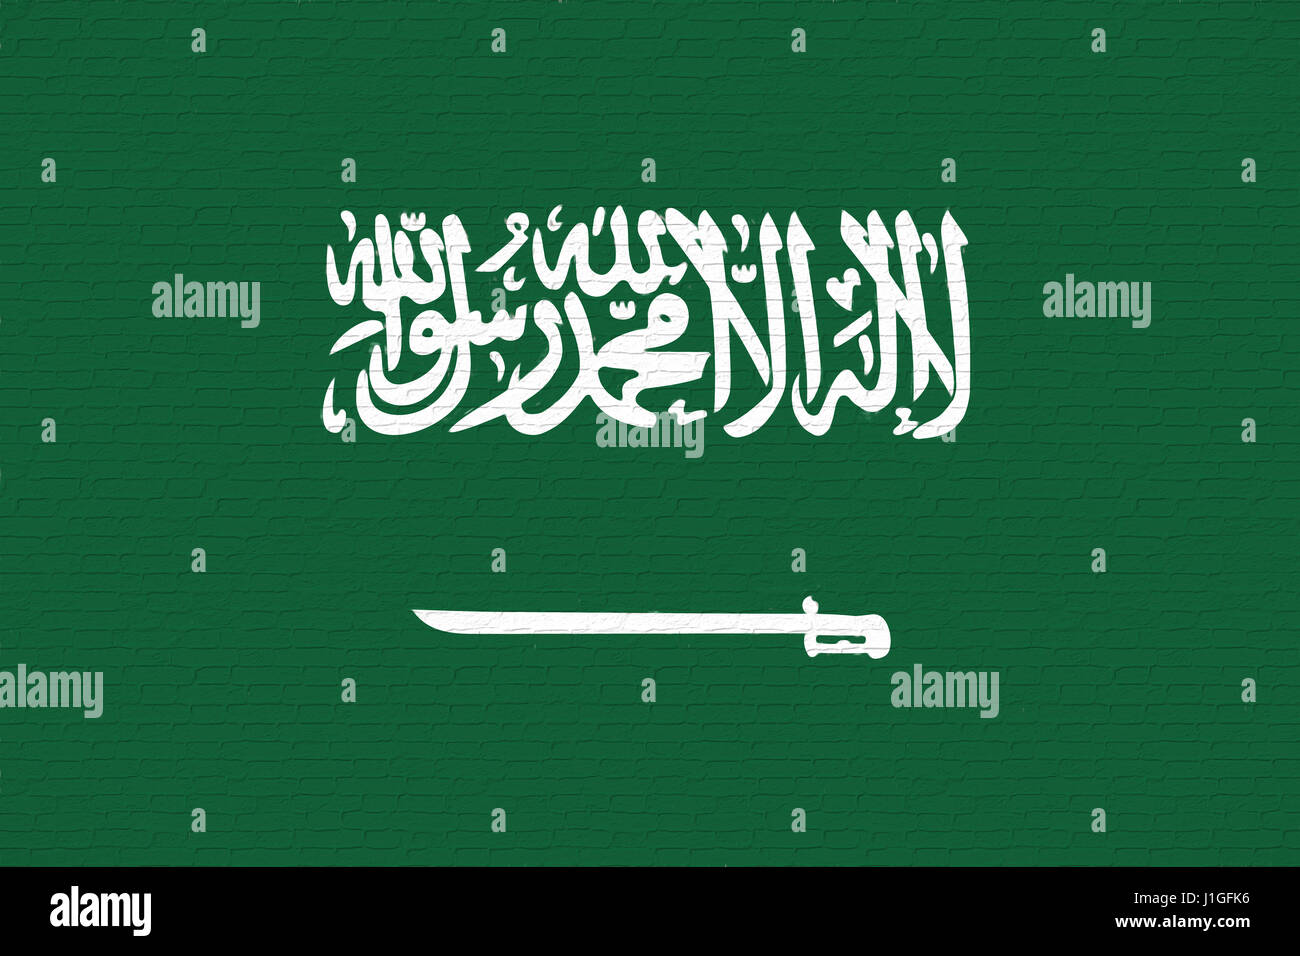 Abbildung der Flagge von Saudi-Arabien sieht aus wie es wurde an die Wand gemalt. Stockfoto